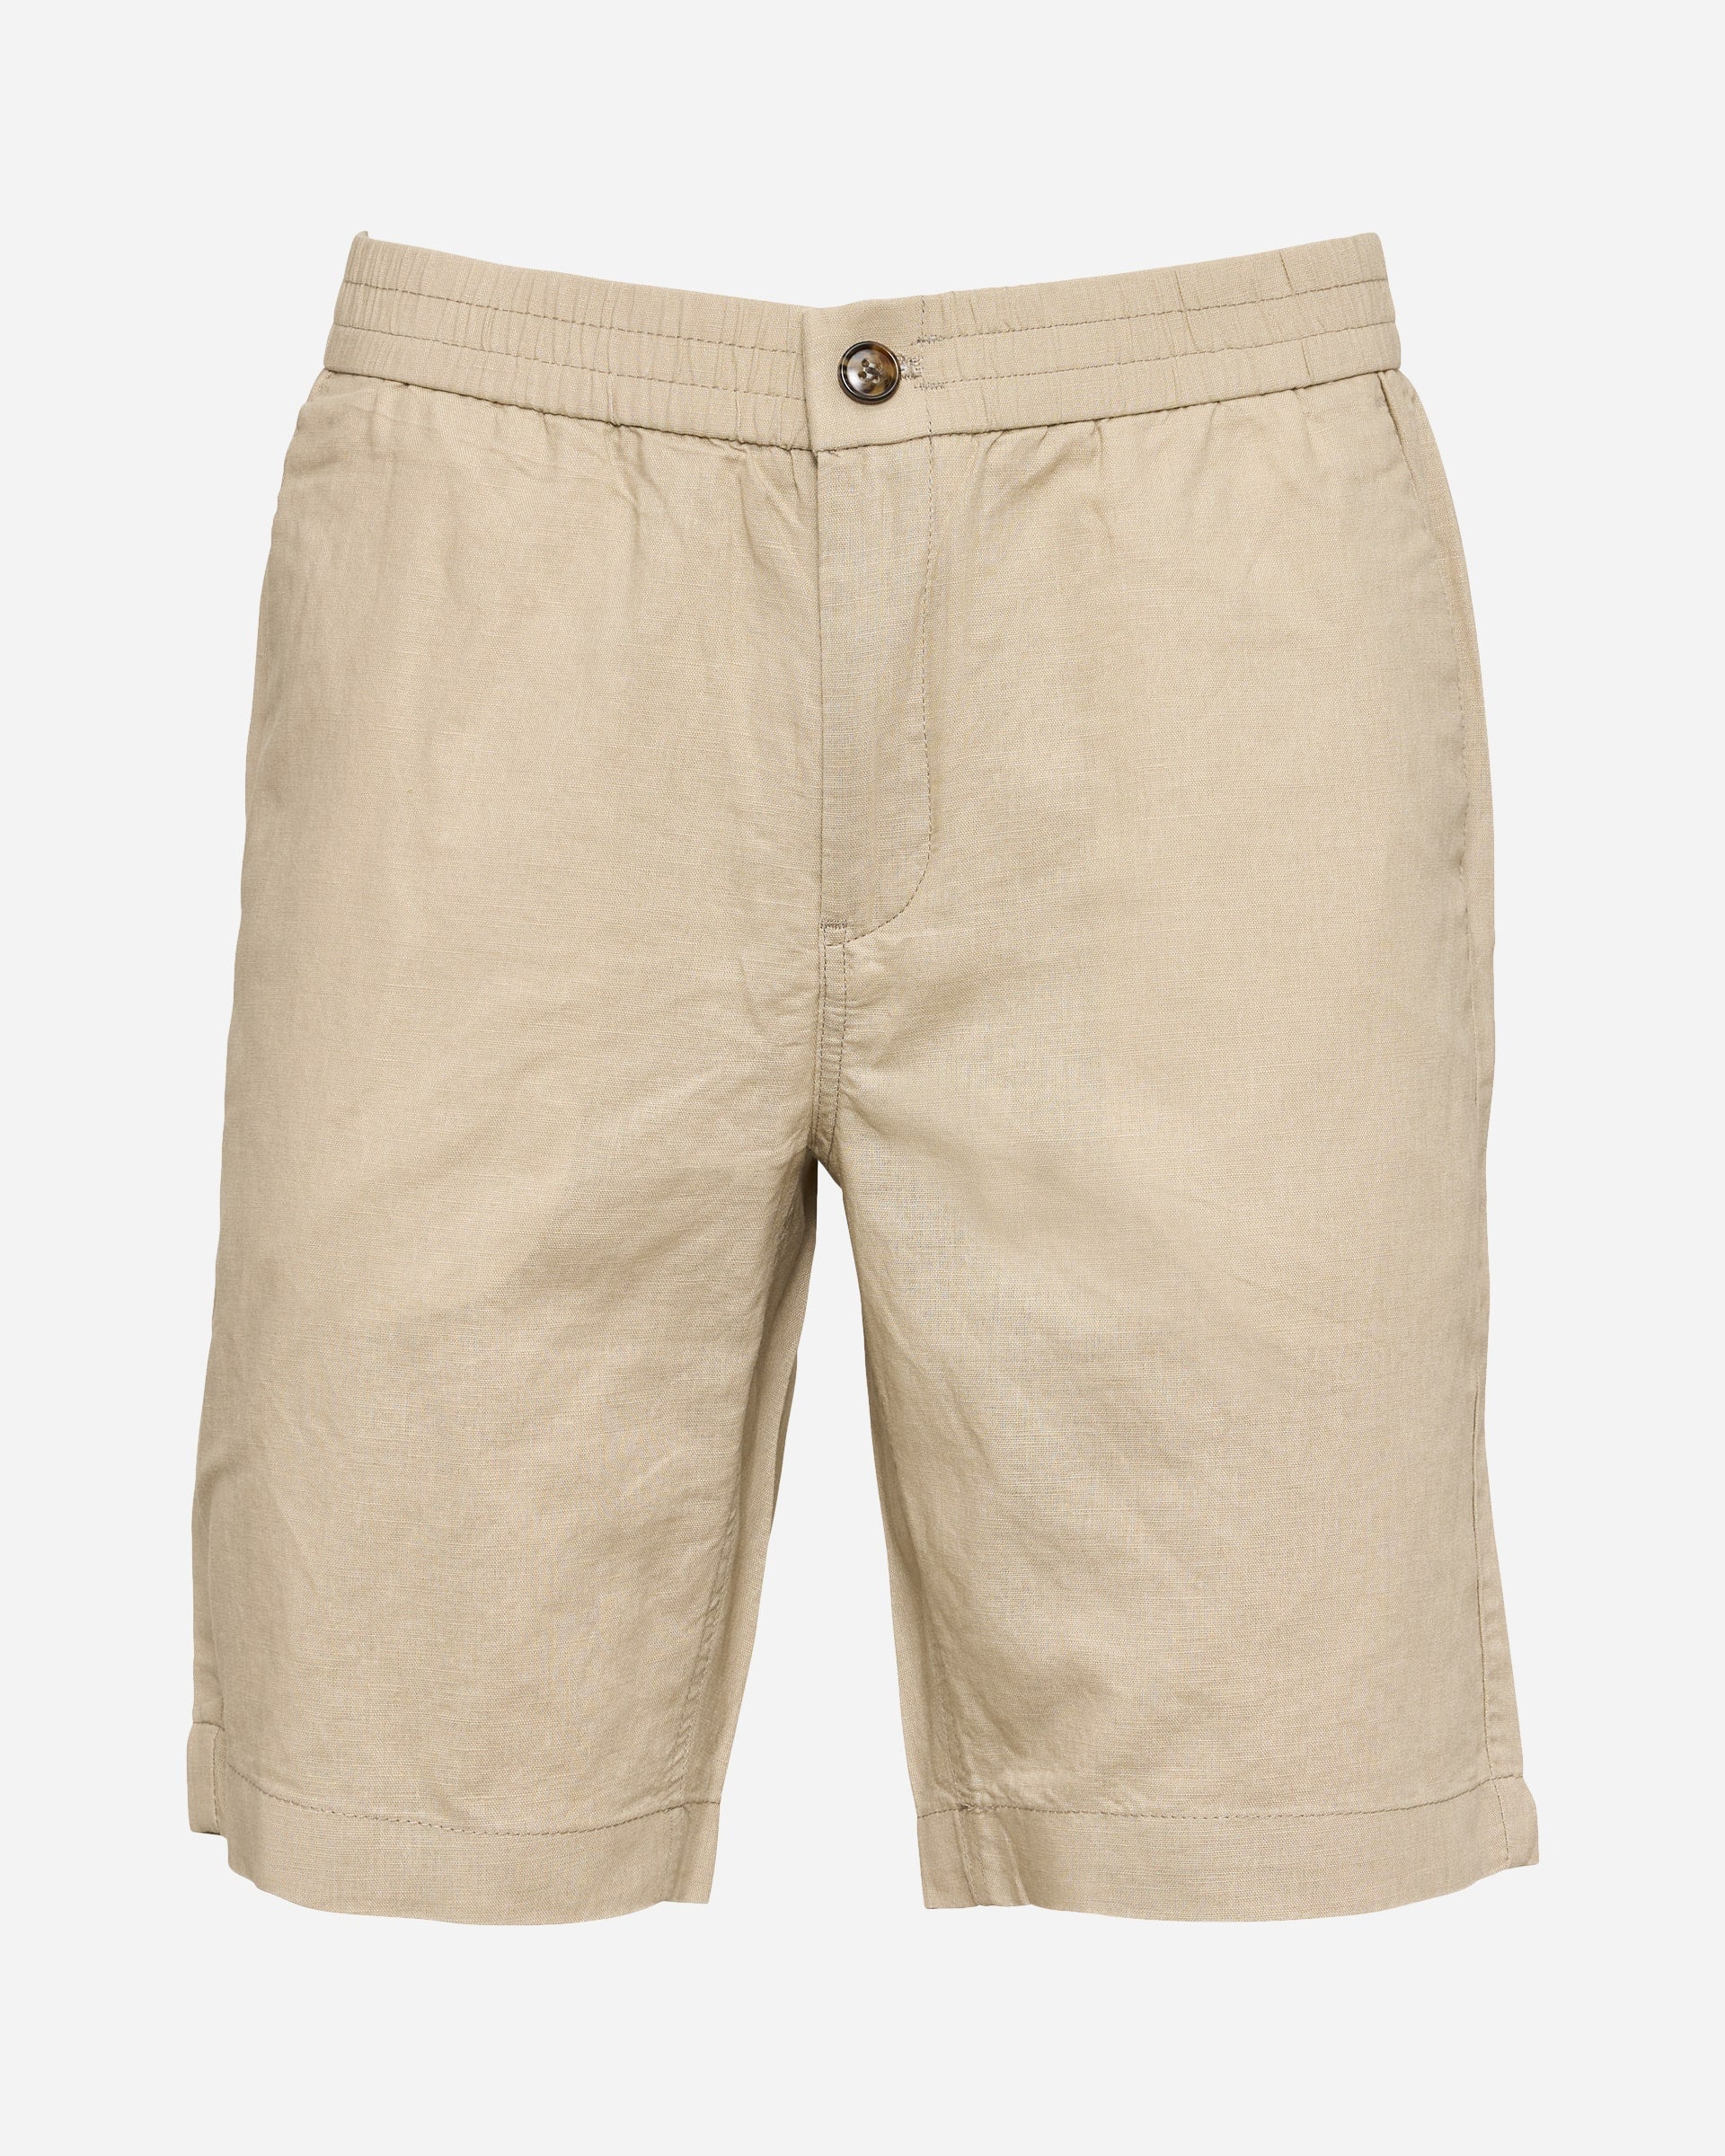 Buy Linen Cargo Shorts for Men Ginger Online